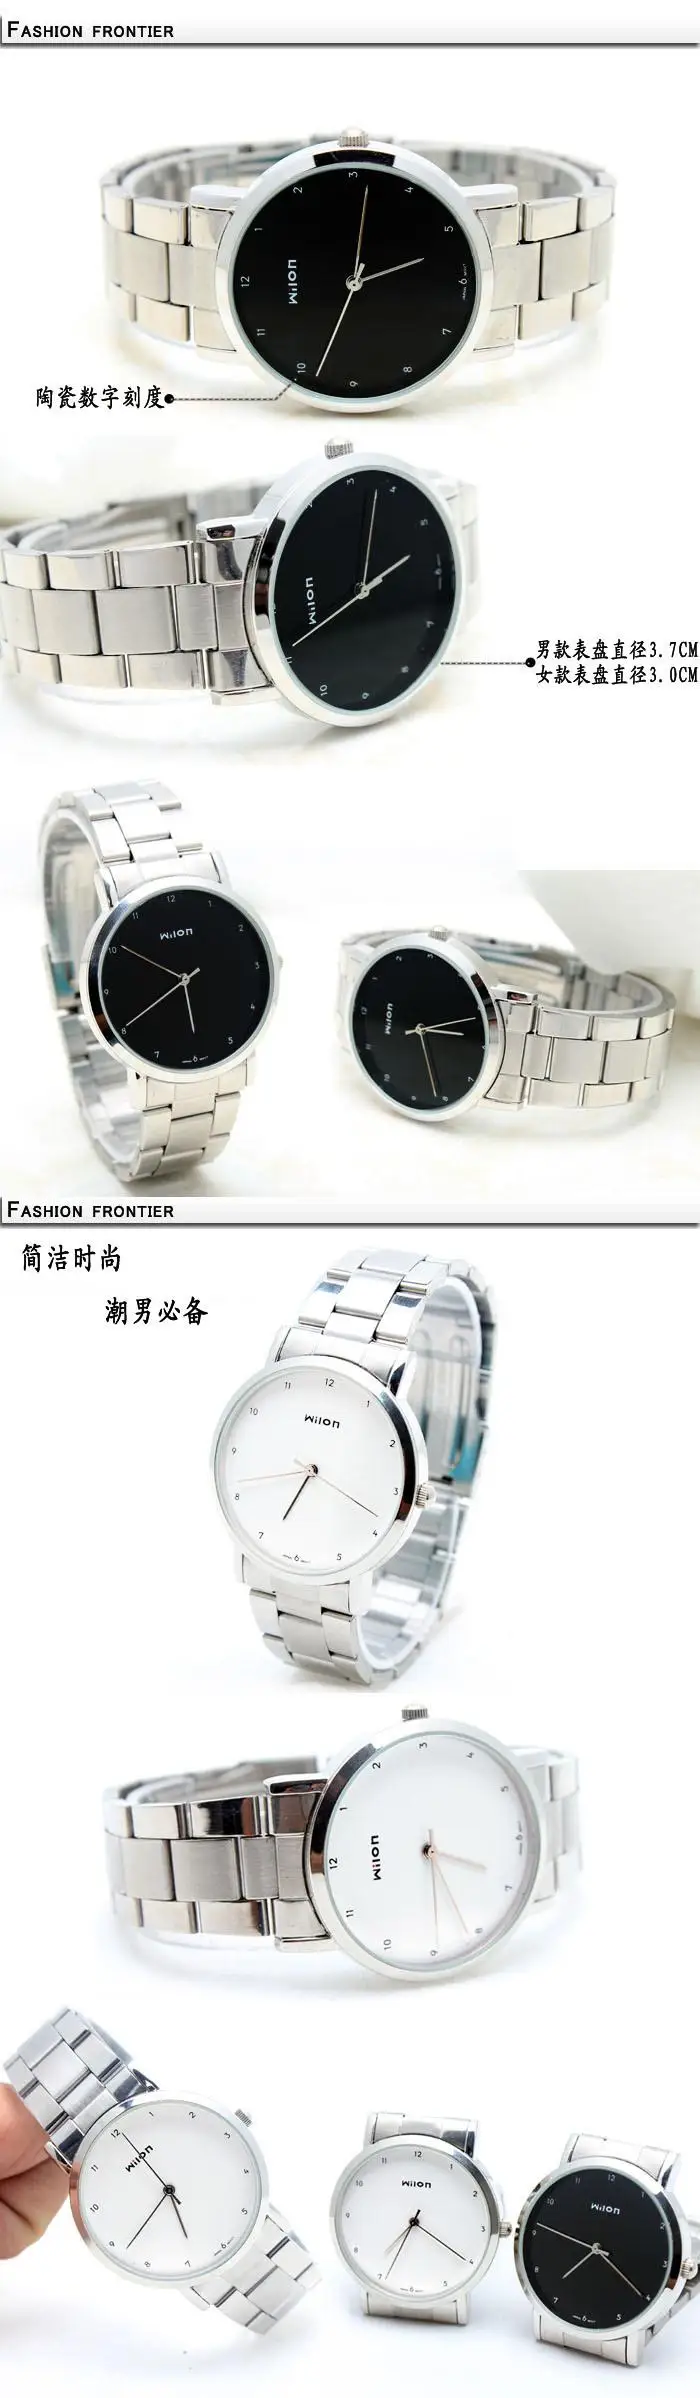 Новый оригинальный Veyron Wilon 906 наручные часы любителей моды часы в простом стиле стальной полосы кварцевые часы мужские и женские часы Relogio